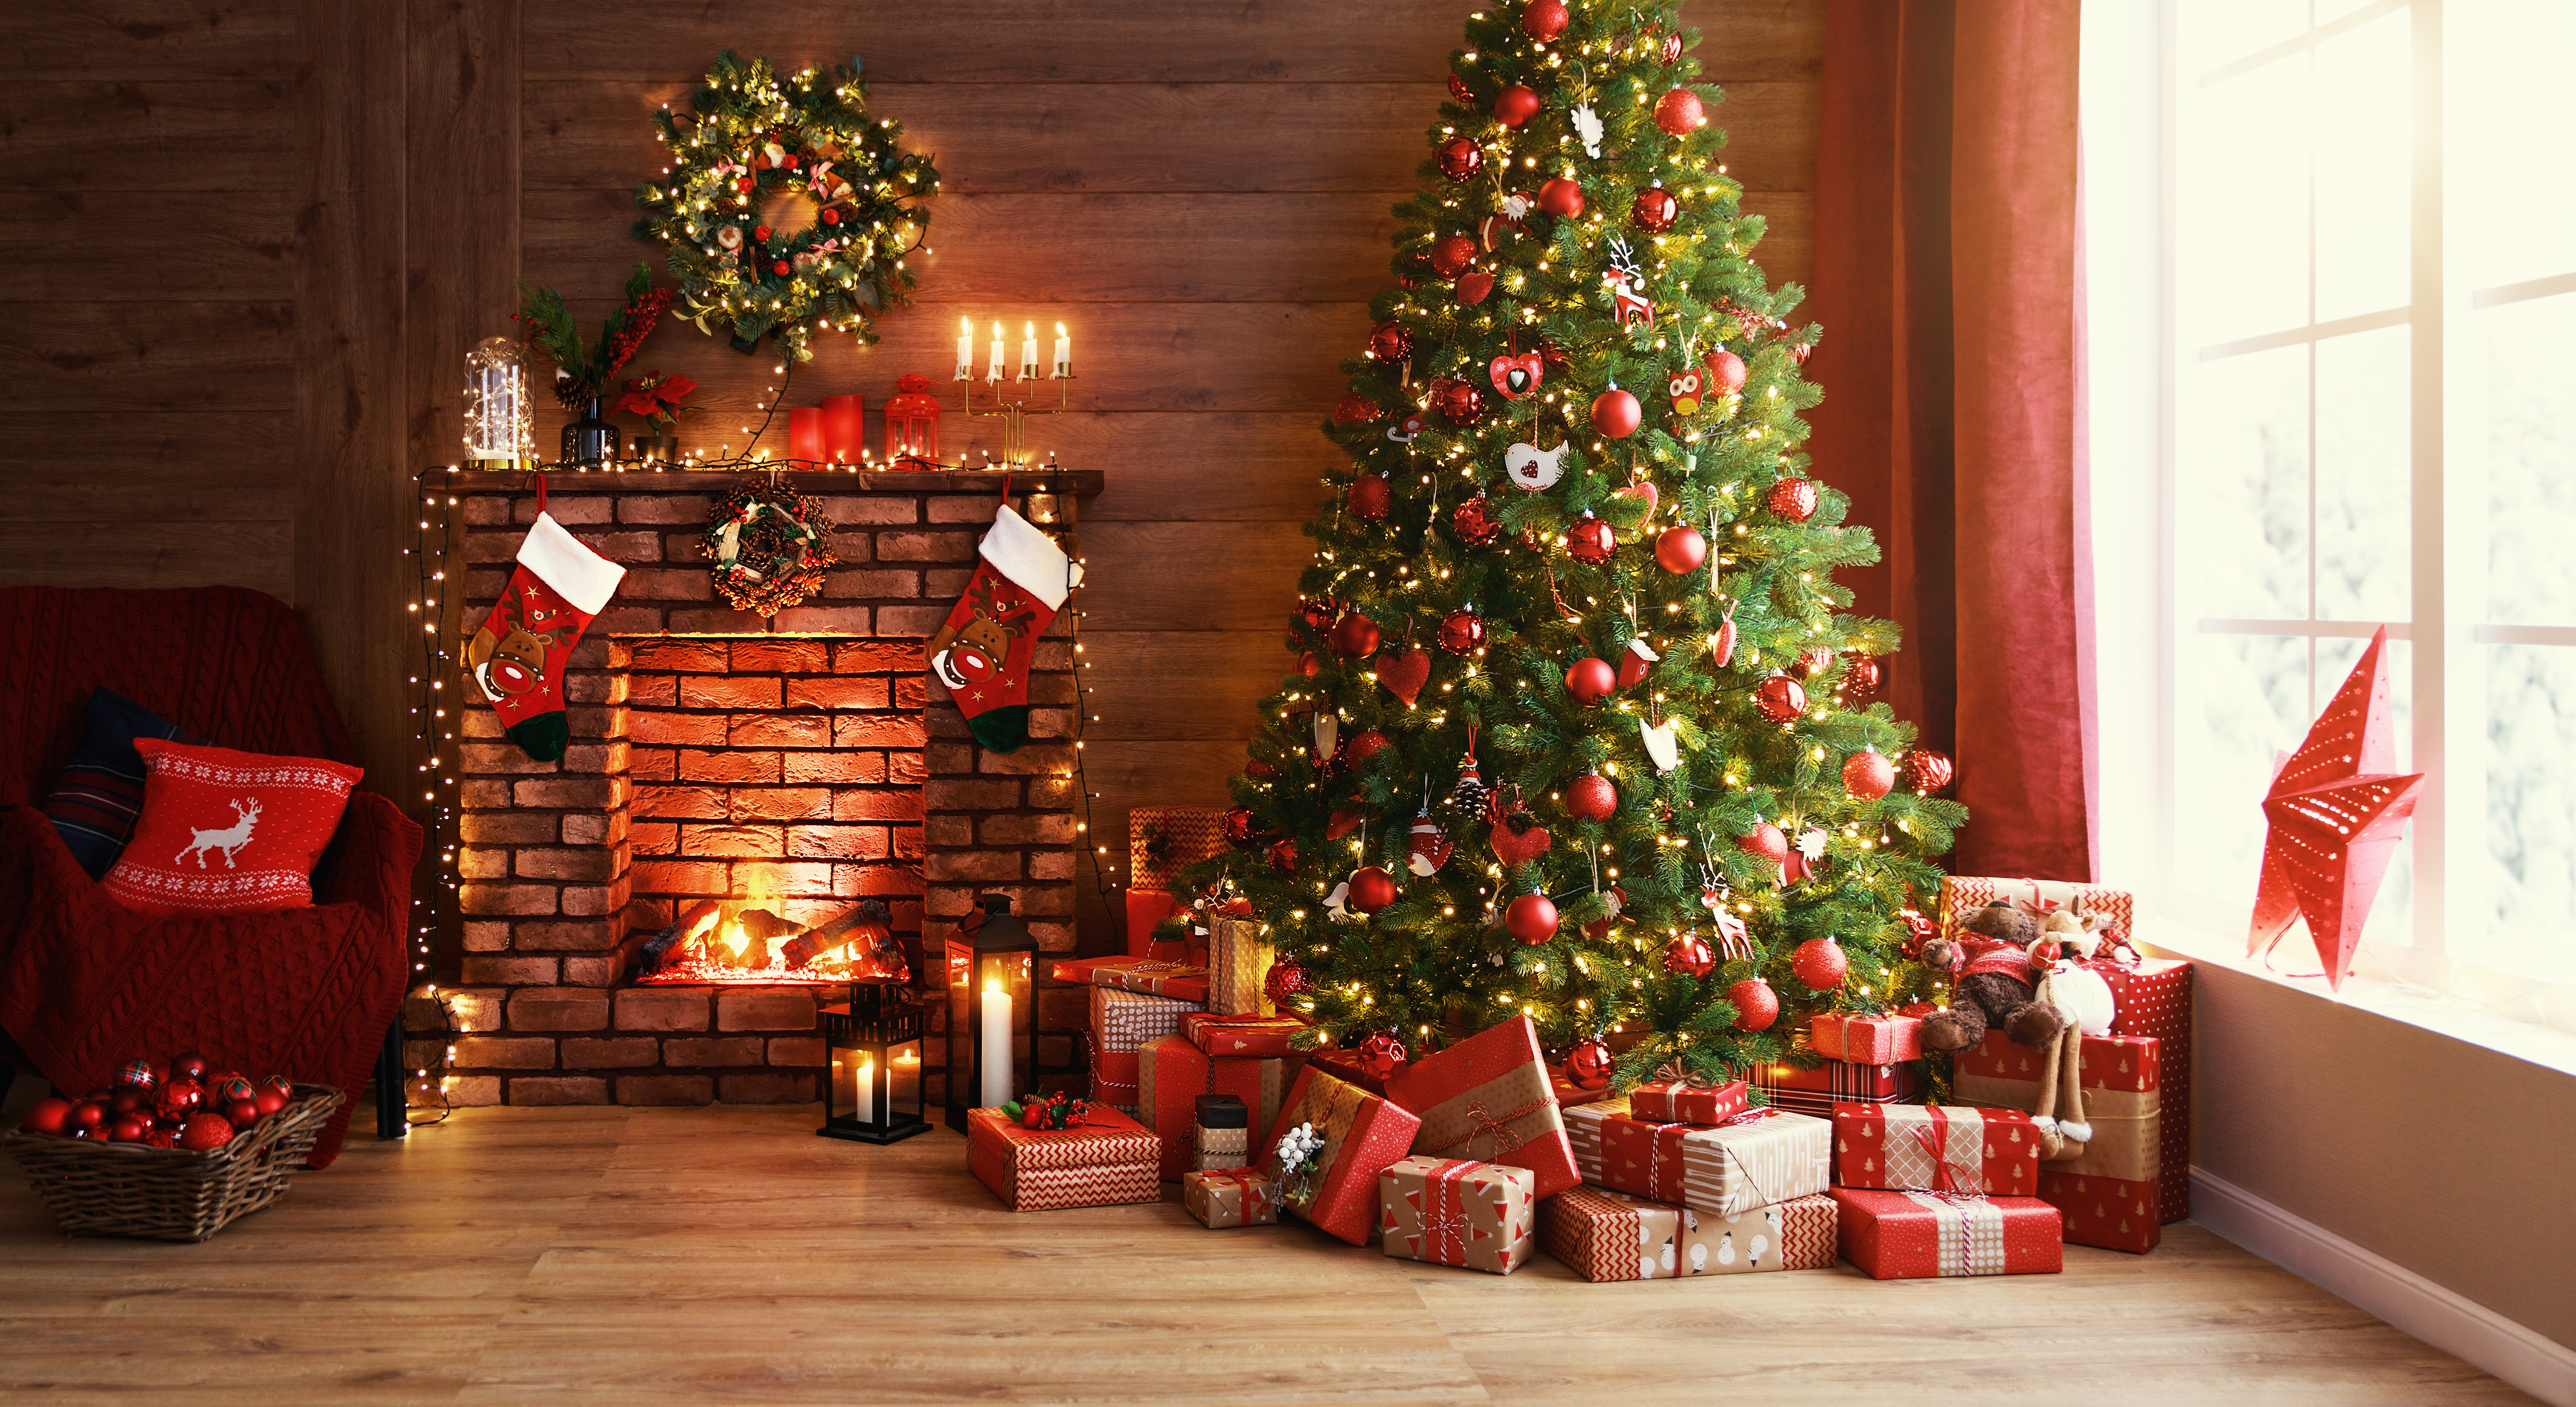 Un sapin de Noël bien décoré sous lequel se trouvent de nombreux cadeaux emballés | Source : Shutterstock